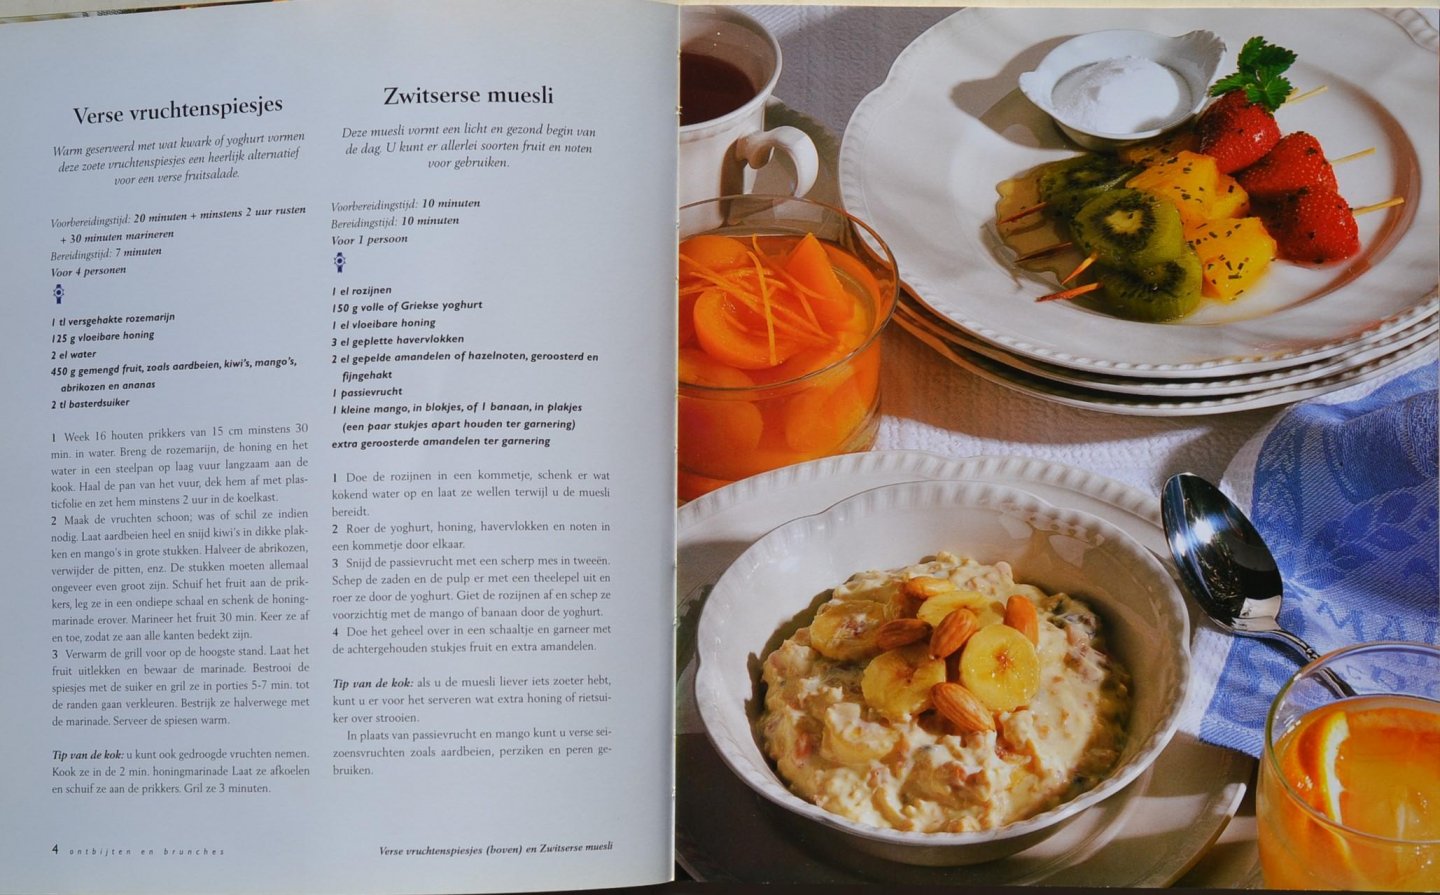 Meiborg, Elke & Hadders, Ingrid - Ontbijten en Brunches - Le Cordon Bleu - recepten van meesterkoks